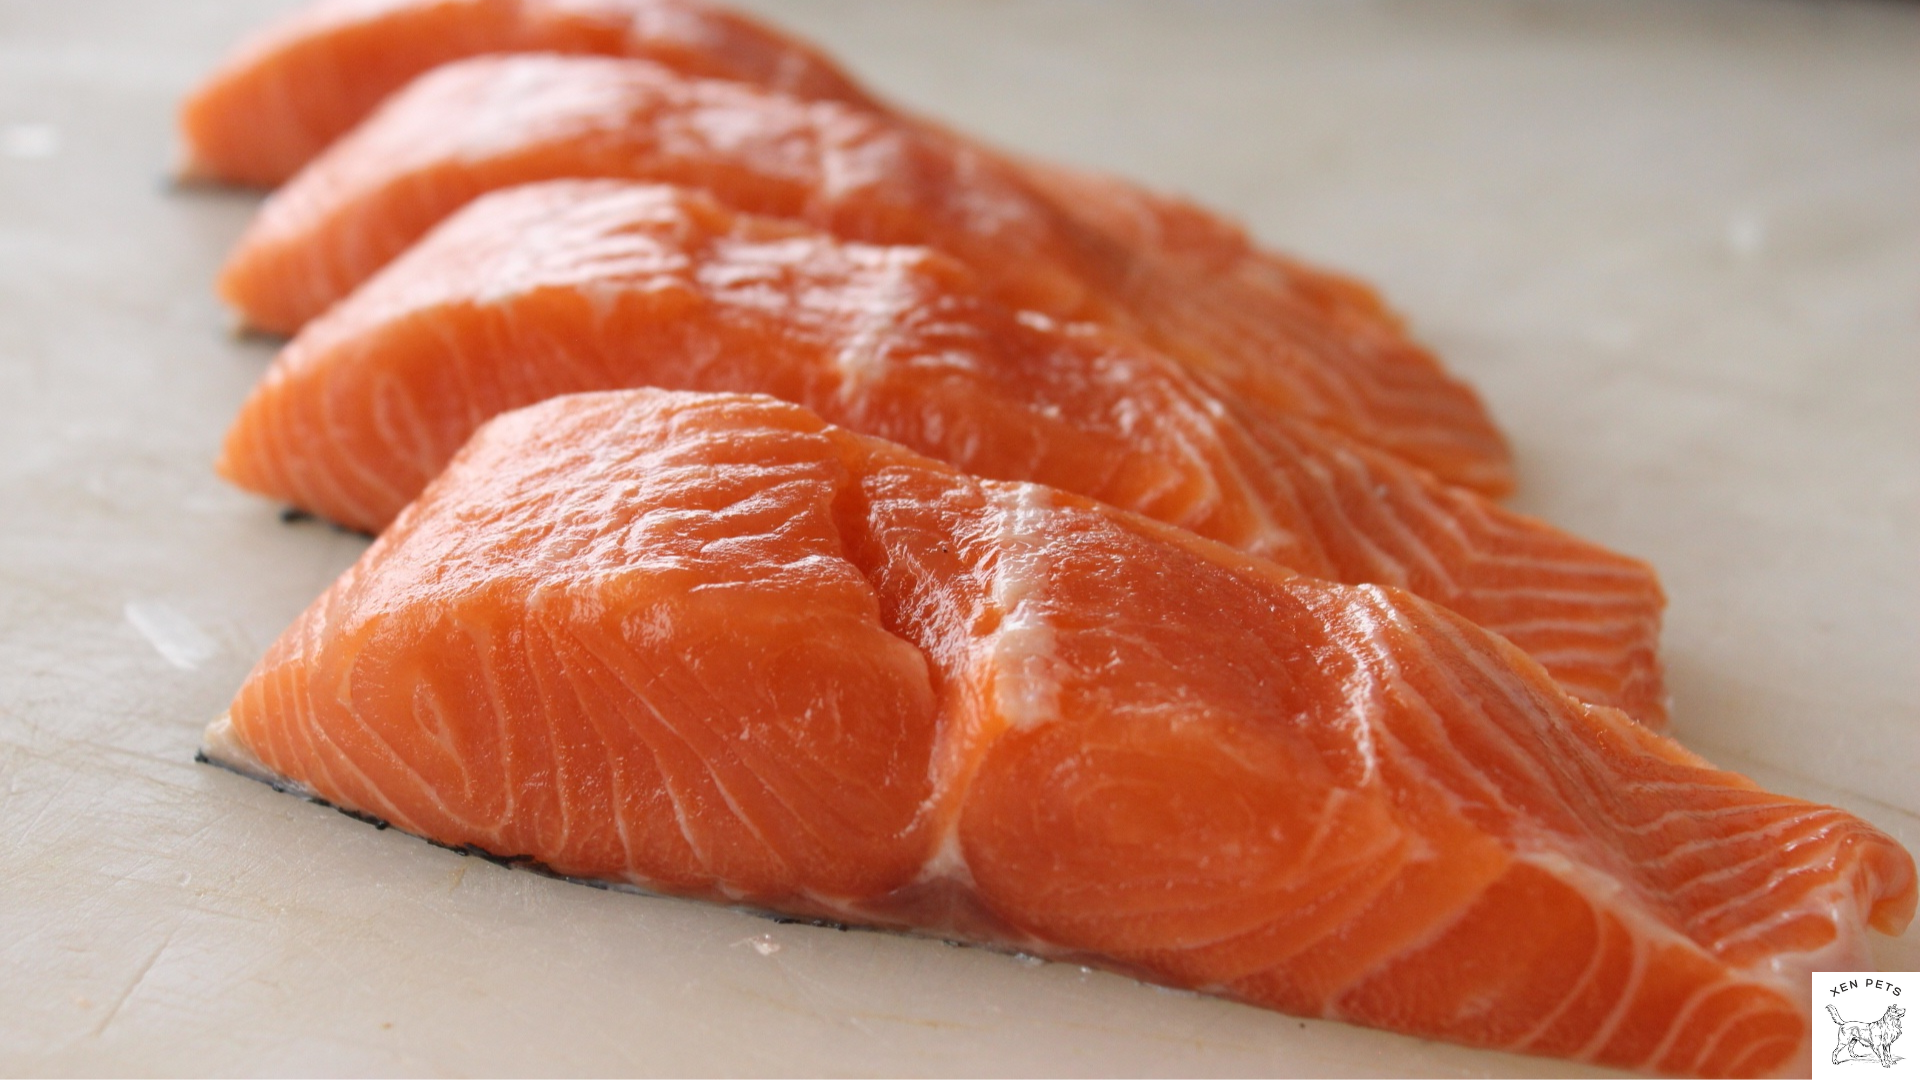 salmon contains vitamin E